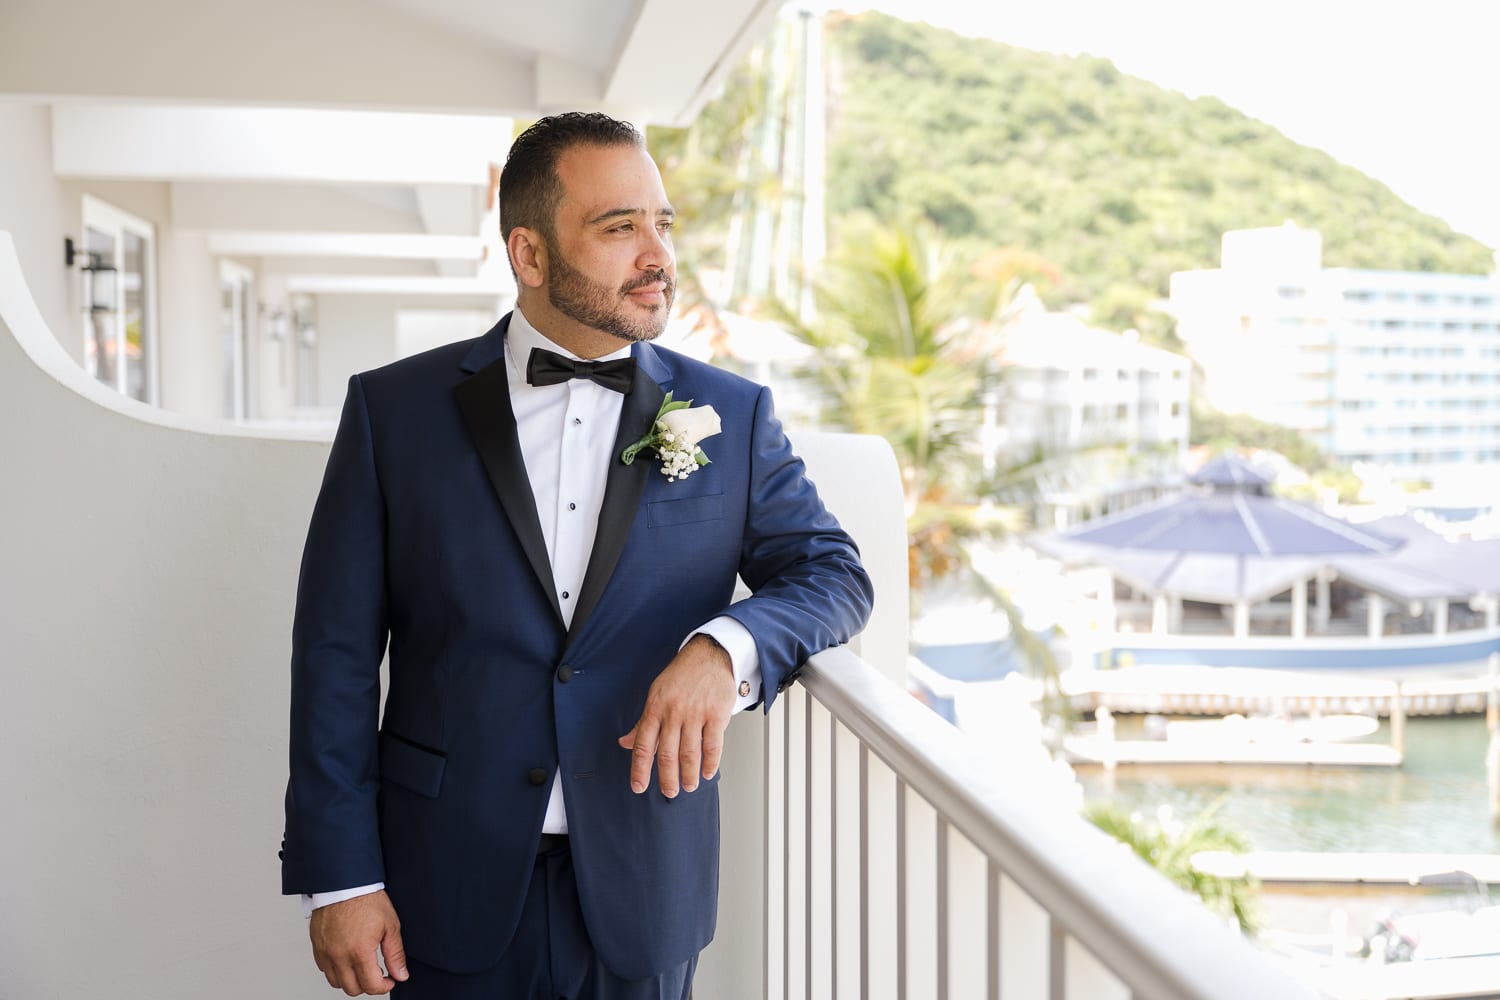 el conquistador resort wedding photography in fajardo puerto rico